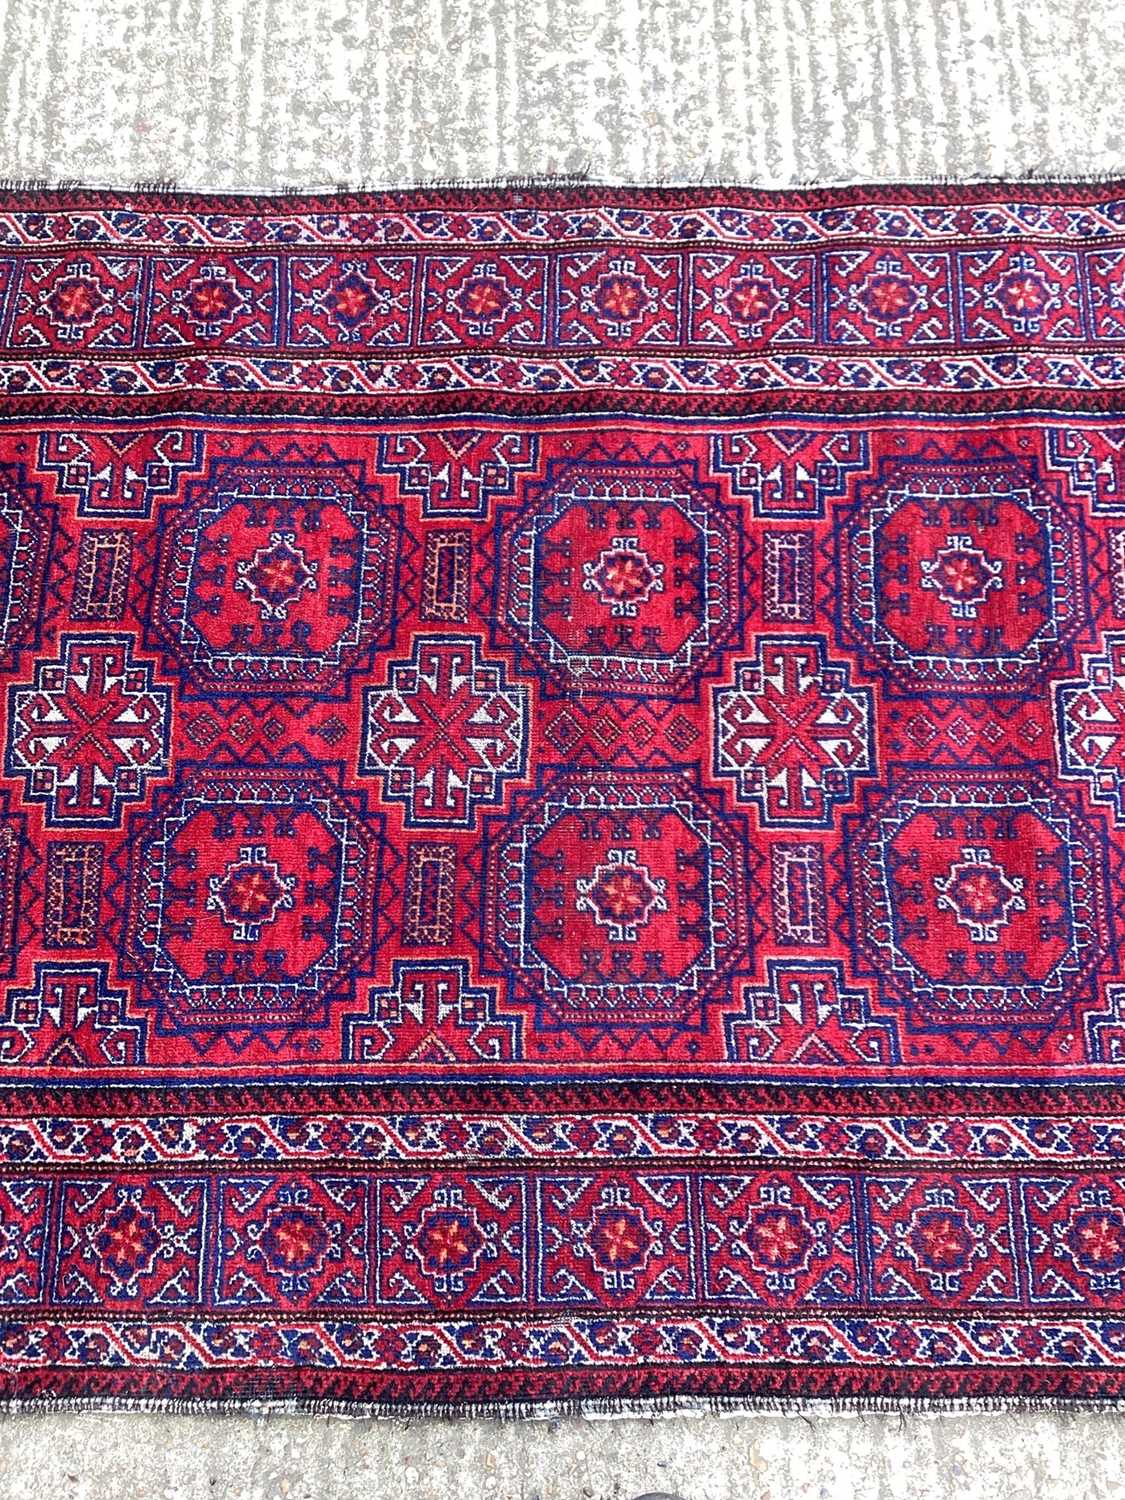 Baluchi rug 1.90m x 1.02m - Image 3 of 5